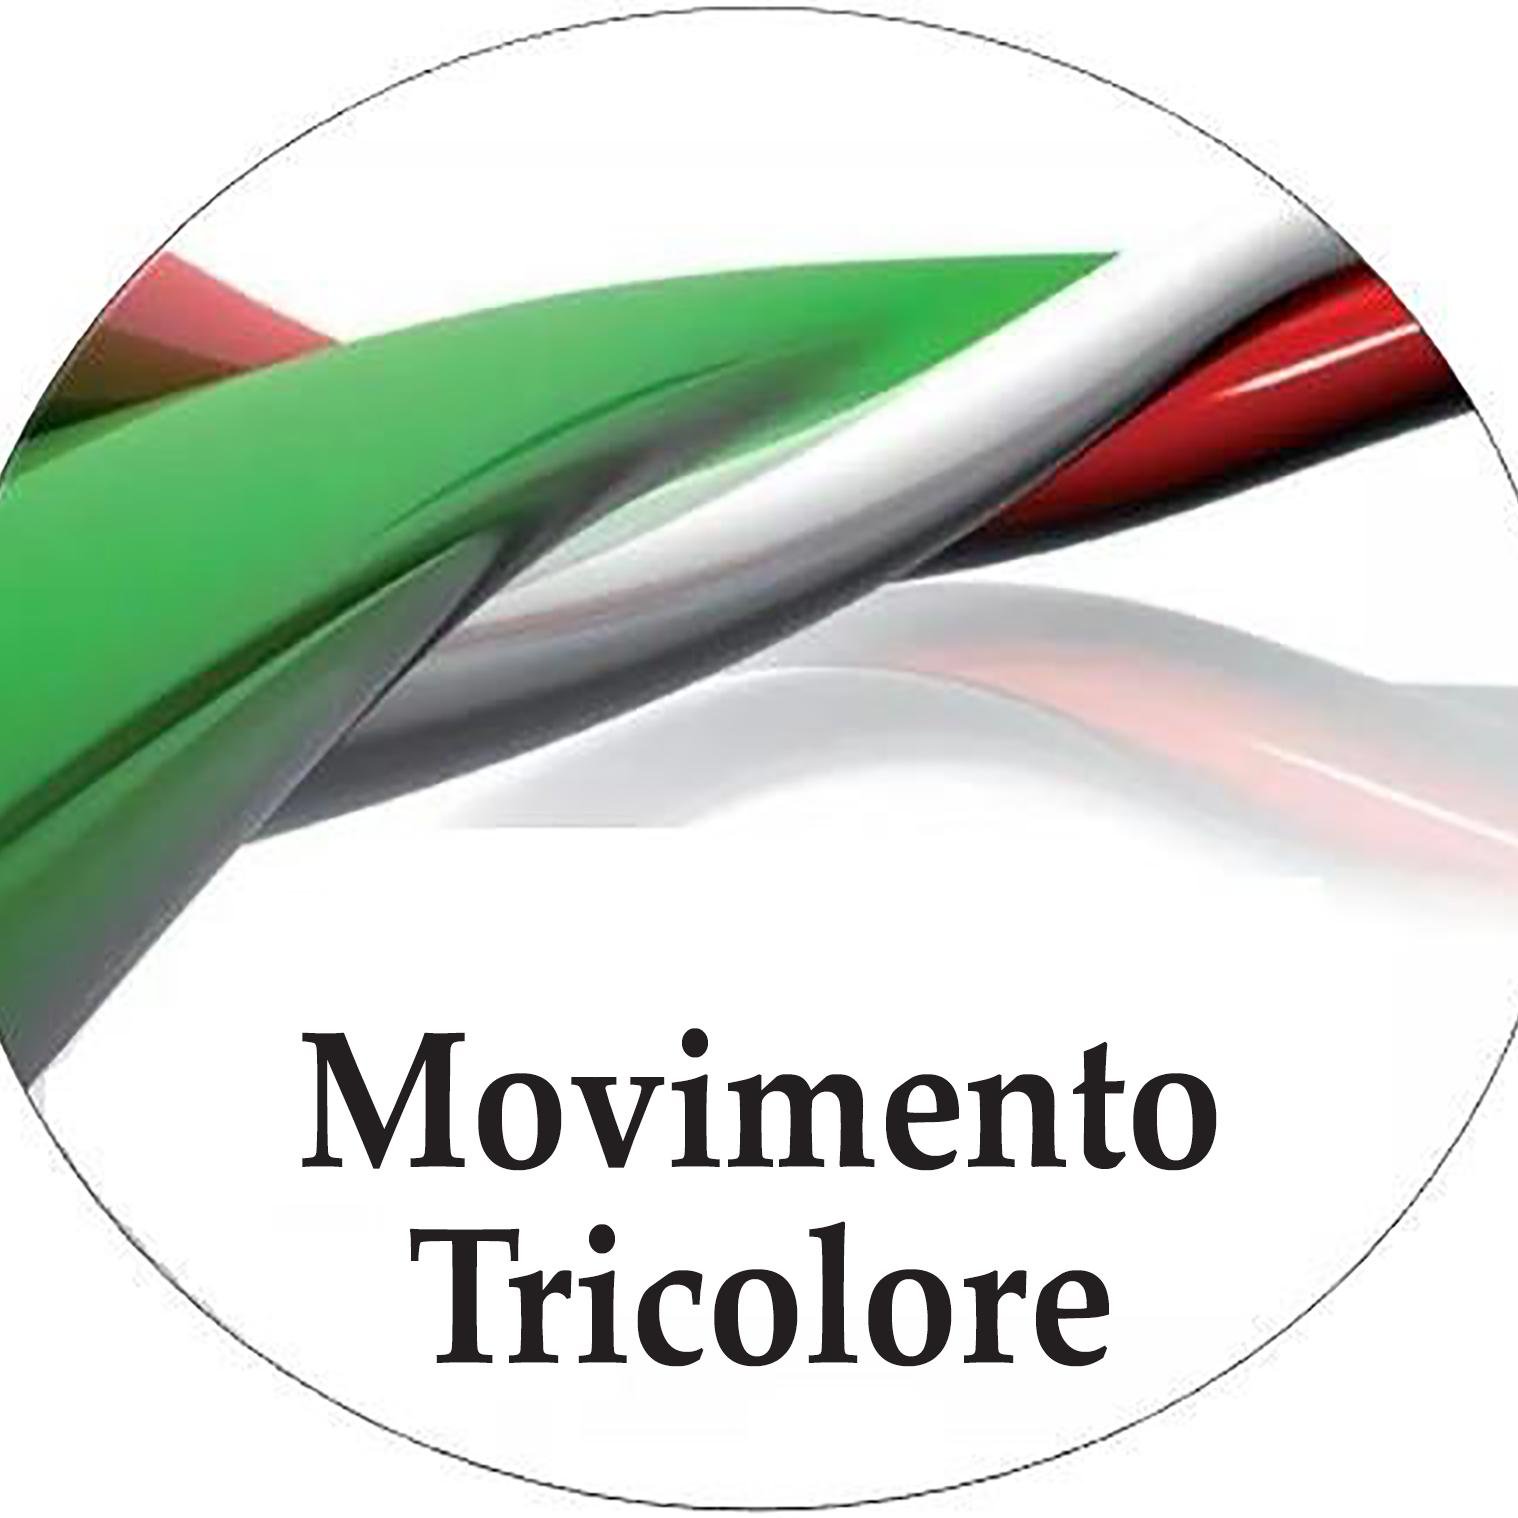 ASSOCIAZIONE PER I DIRITTI DEGLI ITALIANI - Aiutateci a far sentire la vostra voce - info@movimentotricolore.it cercaci su Facebook  #insiemesipuo'